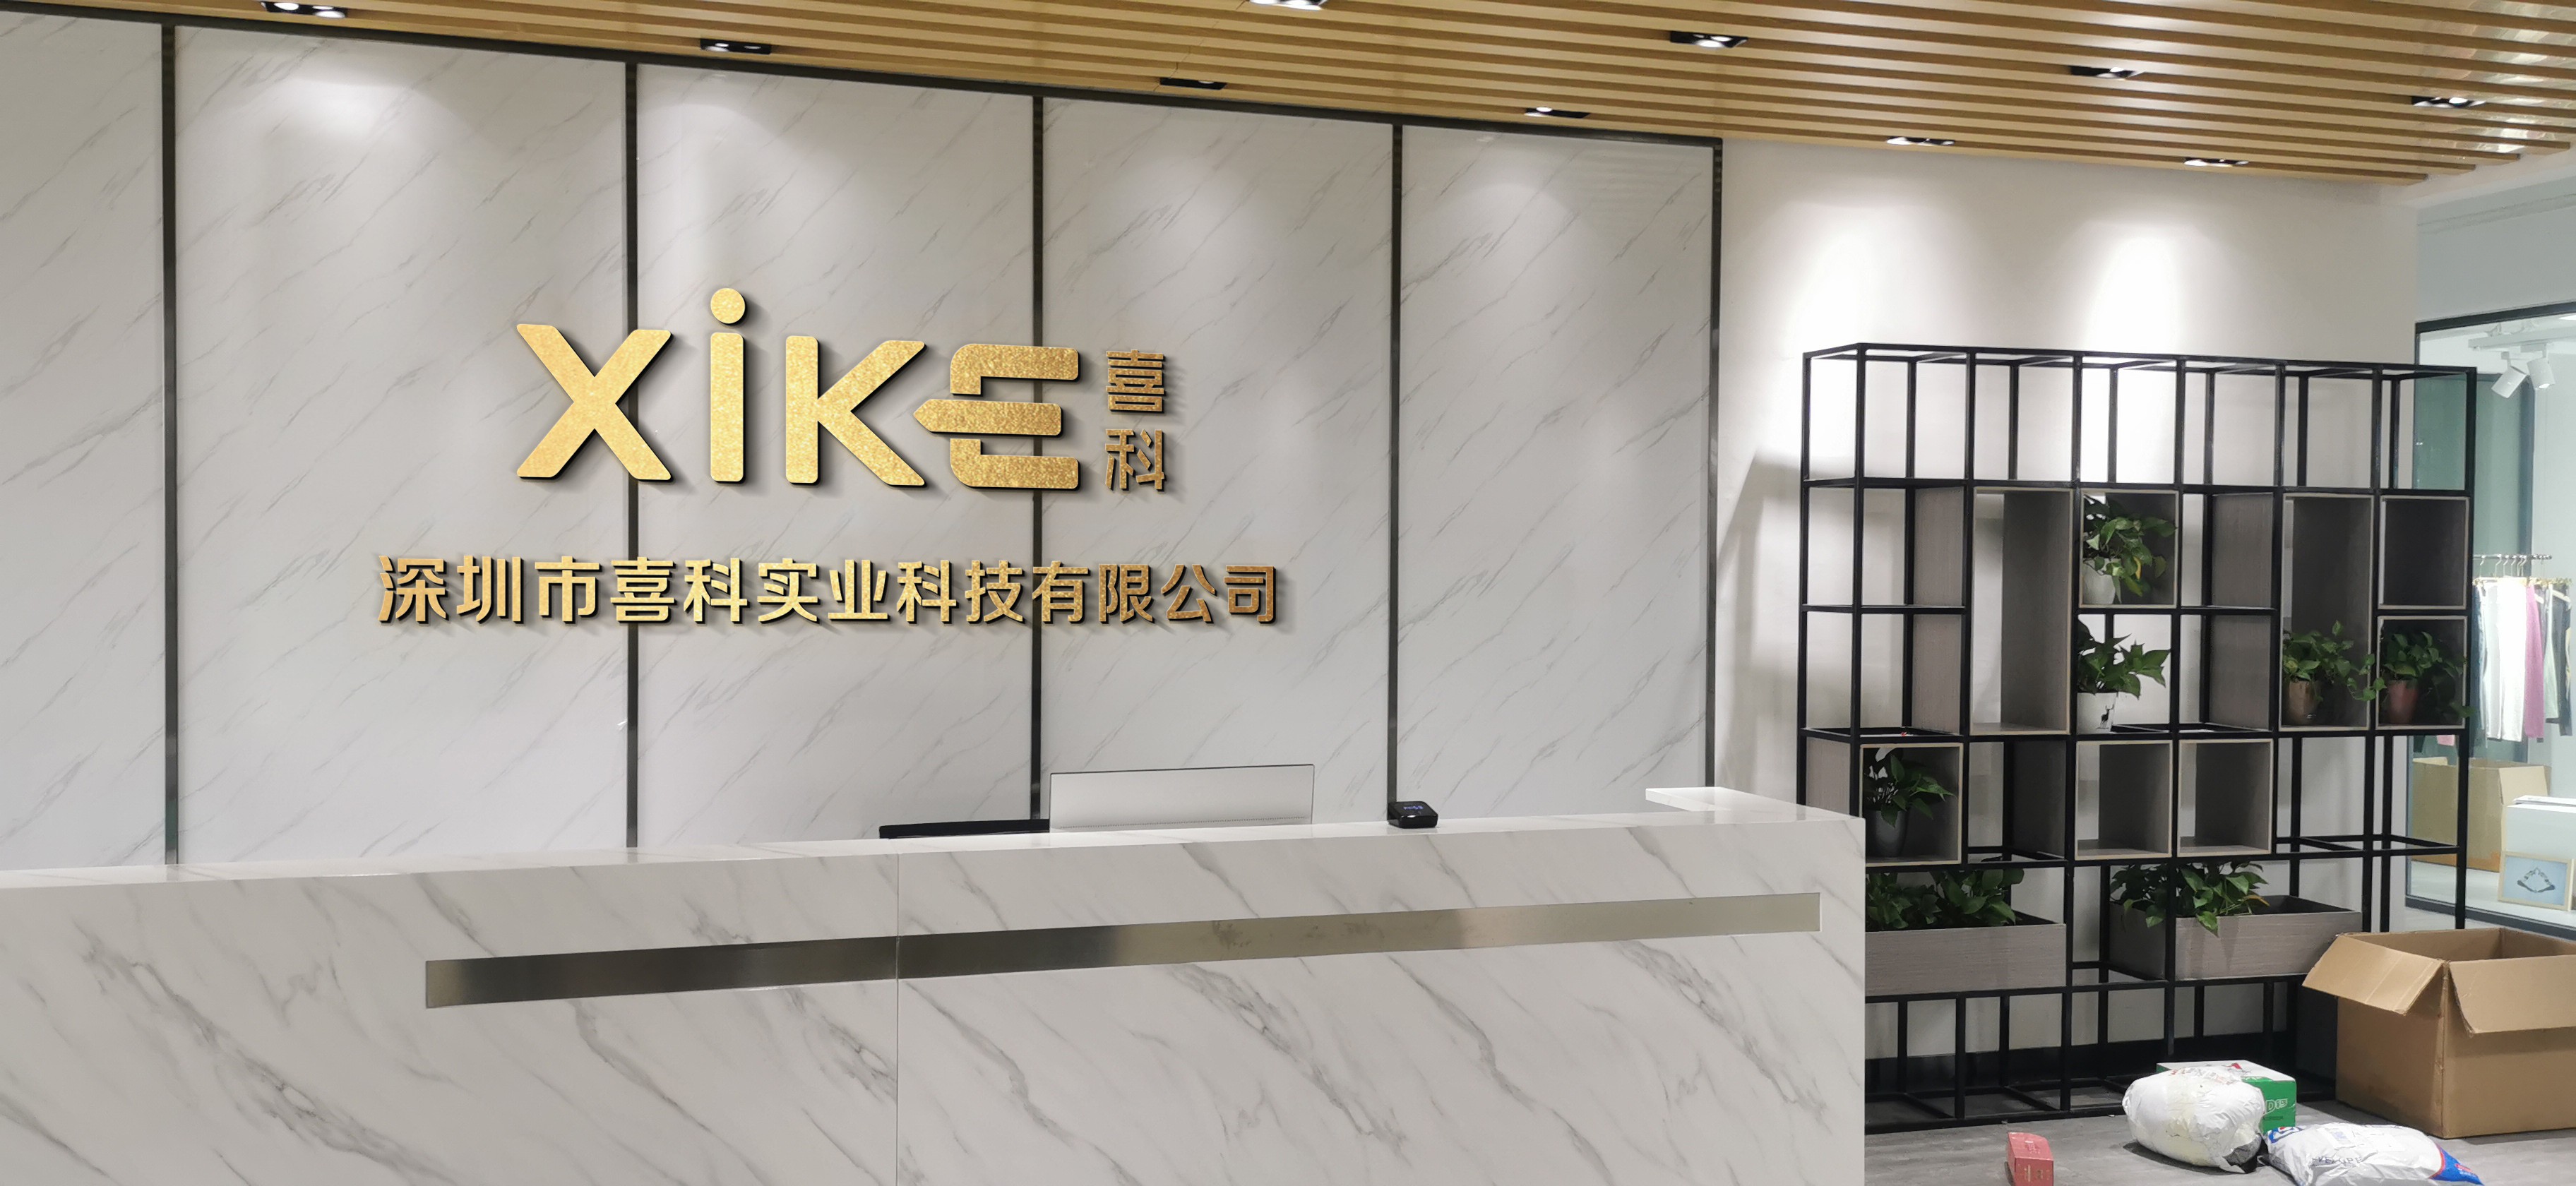 أفضل حمالة صدر رياضية لليوجا للتنفس OEM (حمالة صدر هوائية) سعر المصنع - Xike